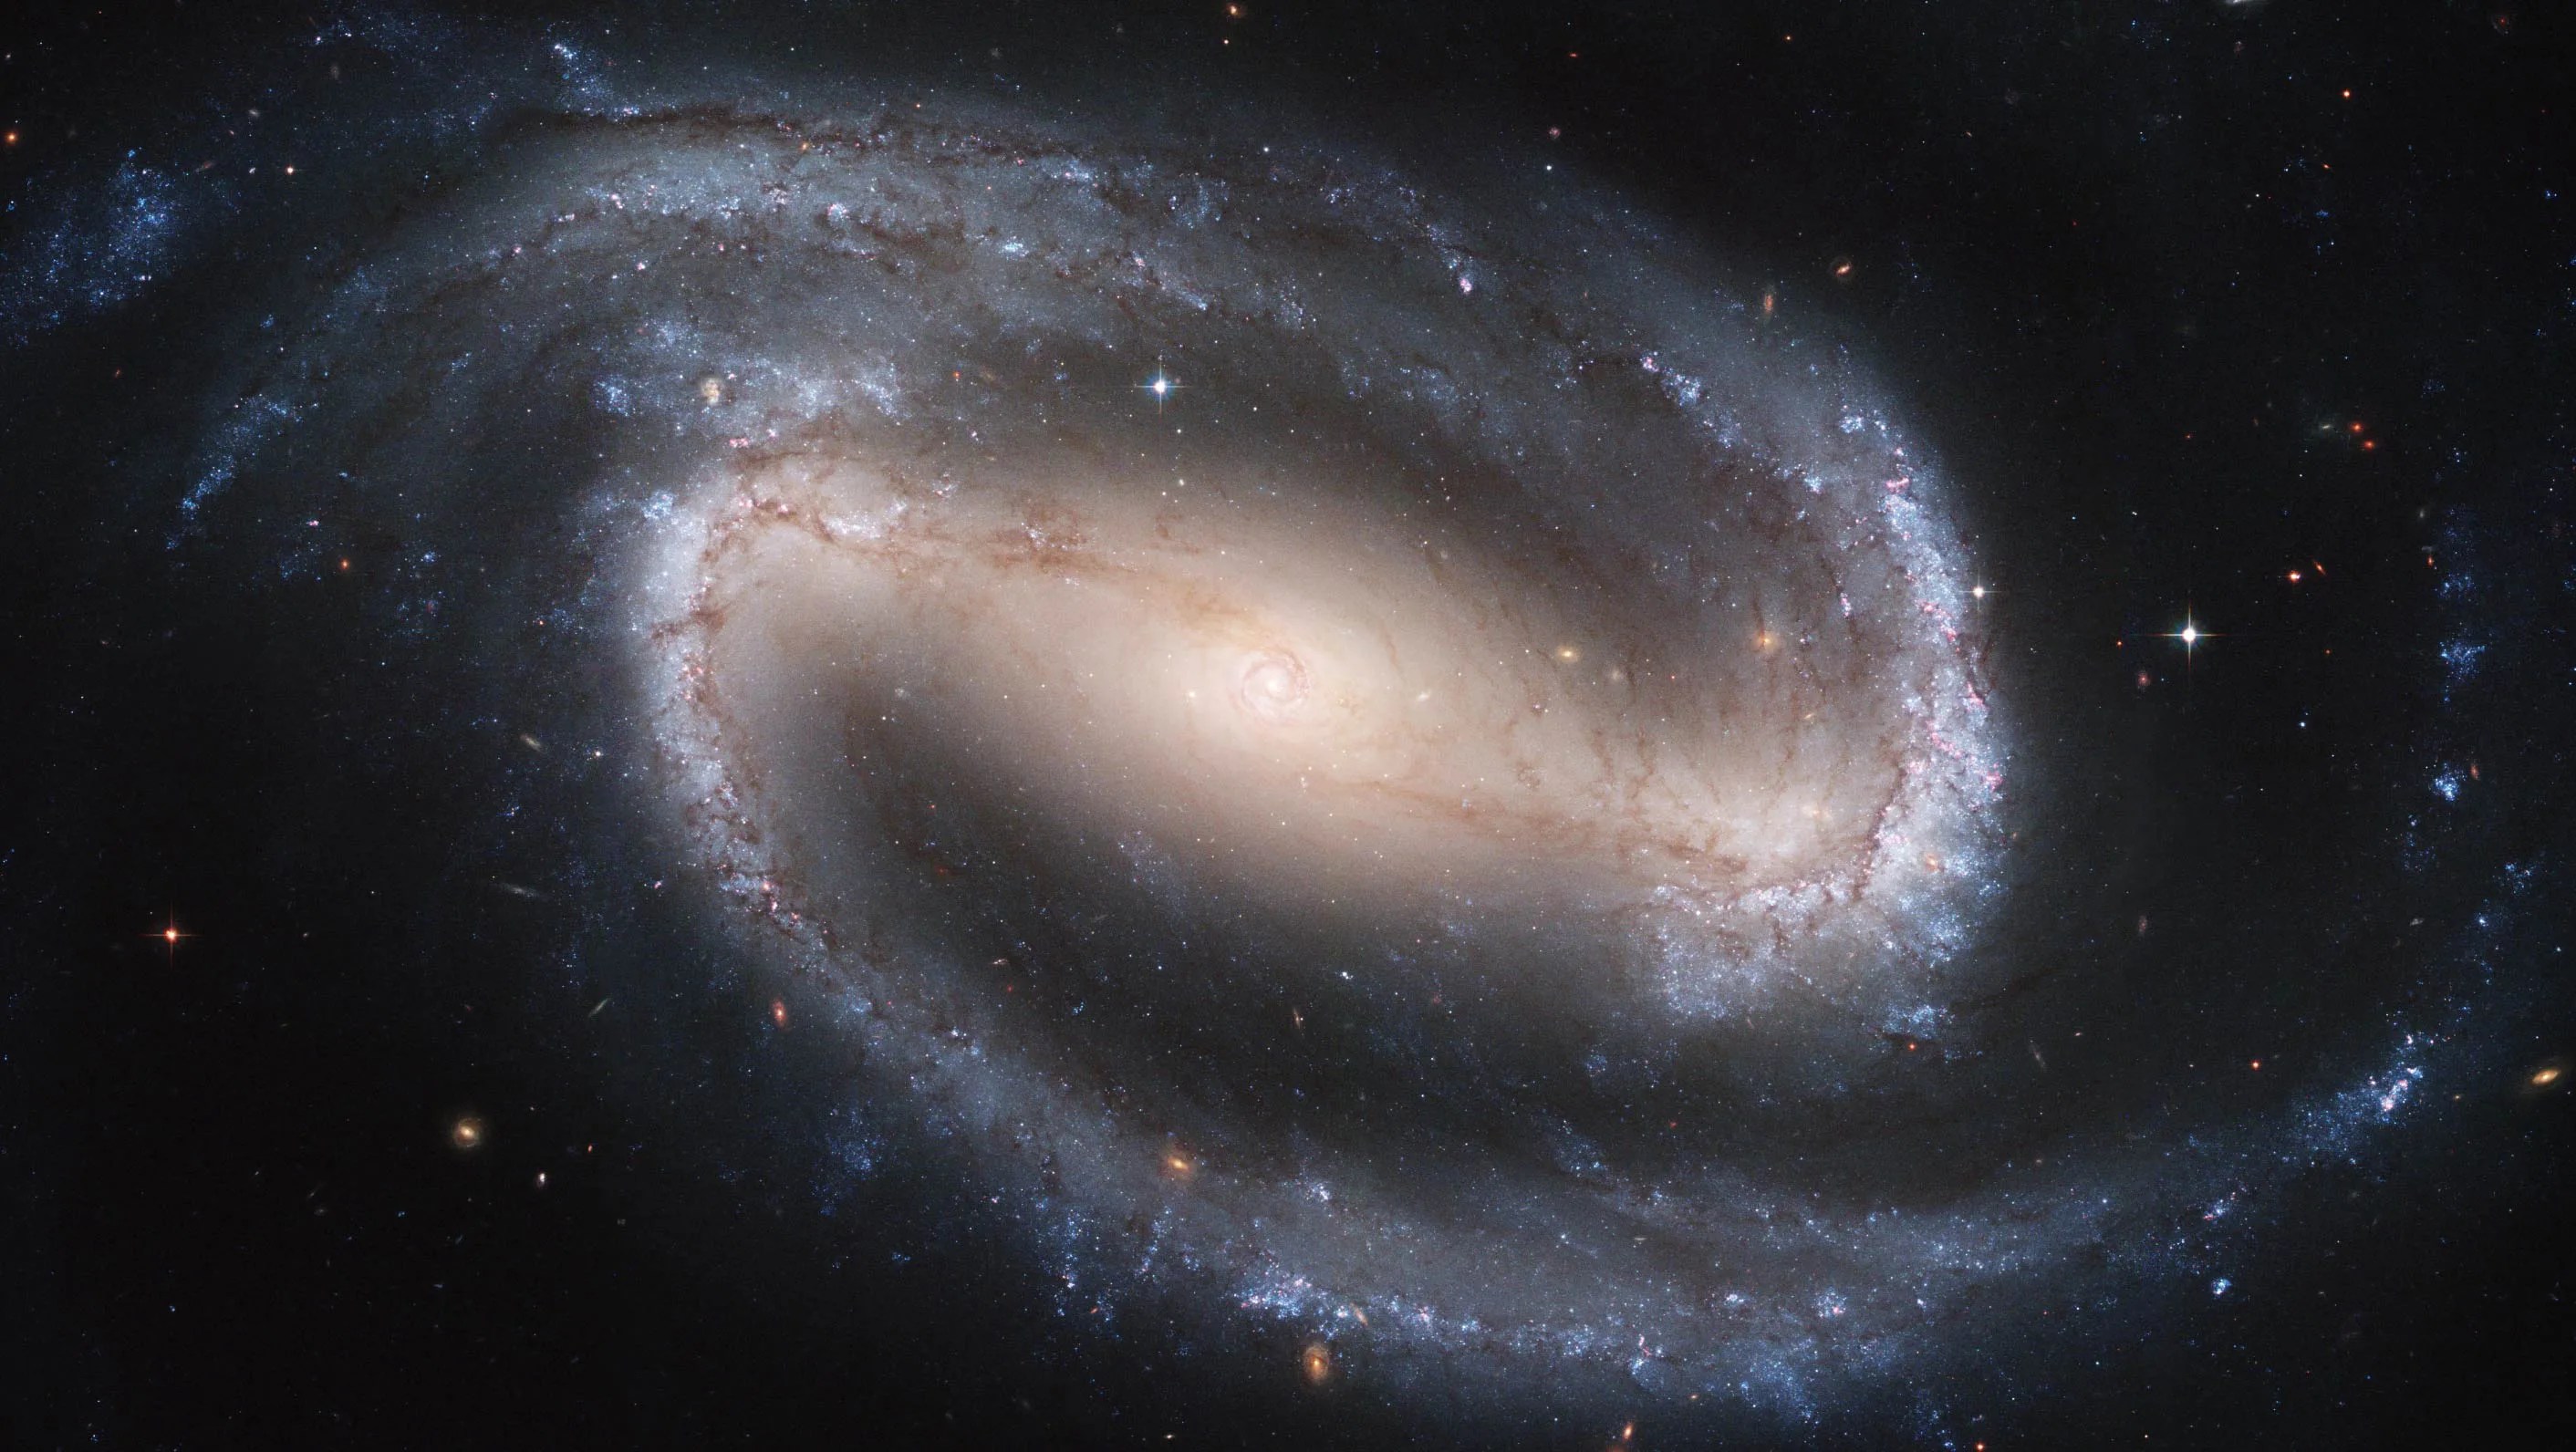 Hubble image of NGC 1300